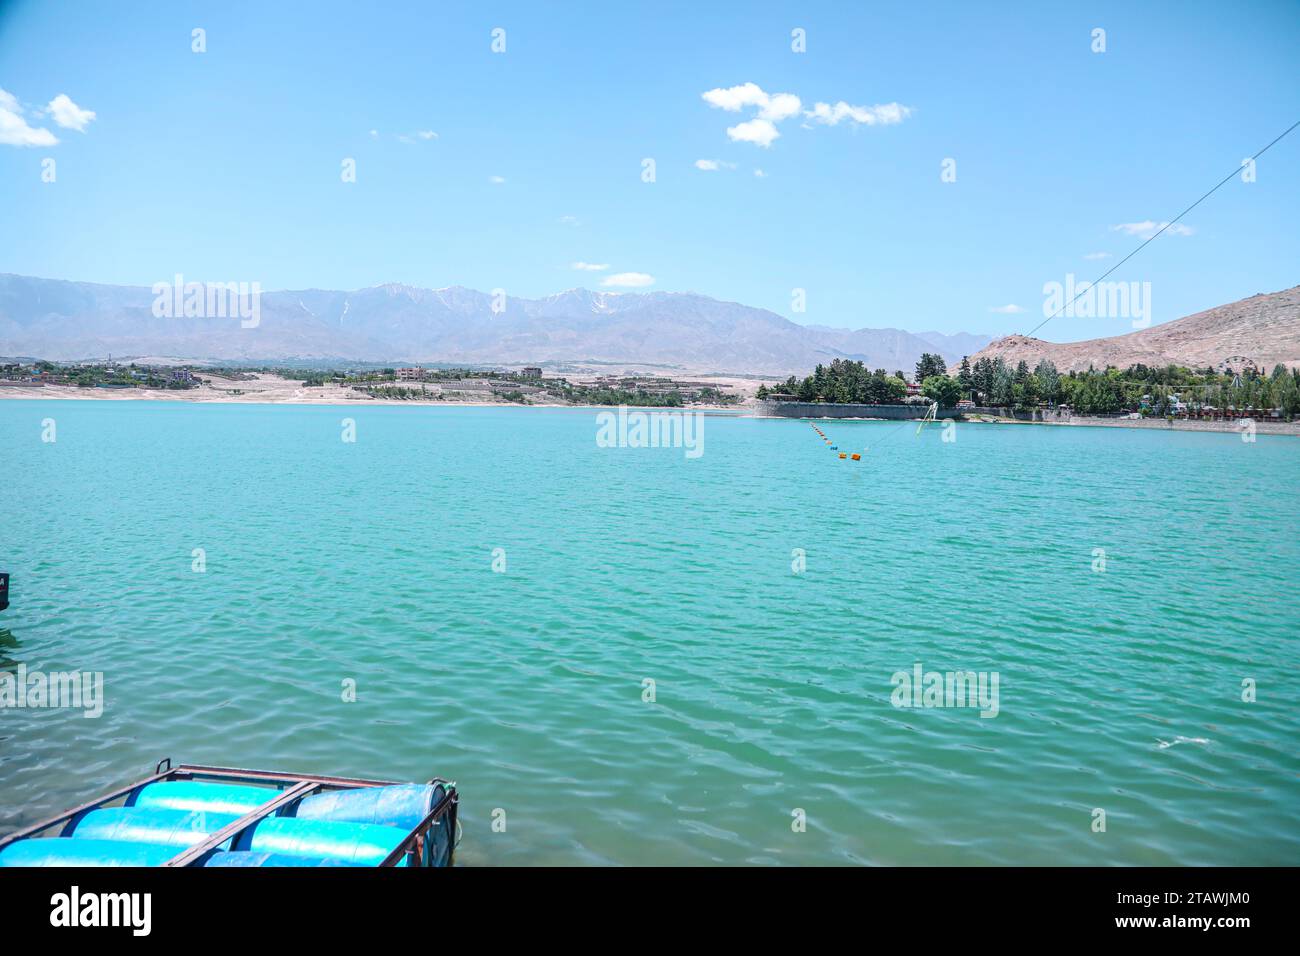 Splendida vista panoramica di un lago, delle navi e del cielo blu. Foto Stock